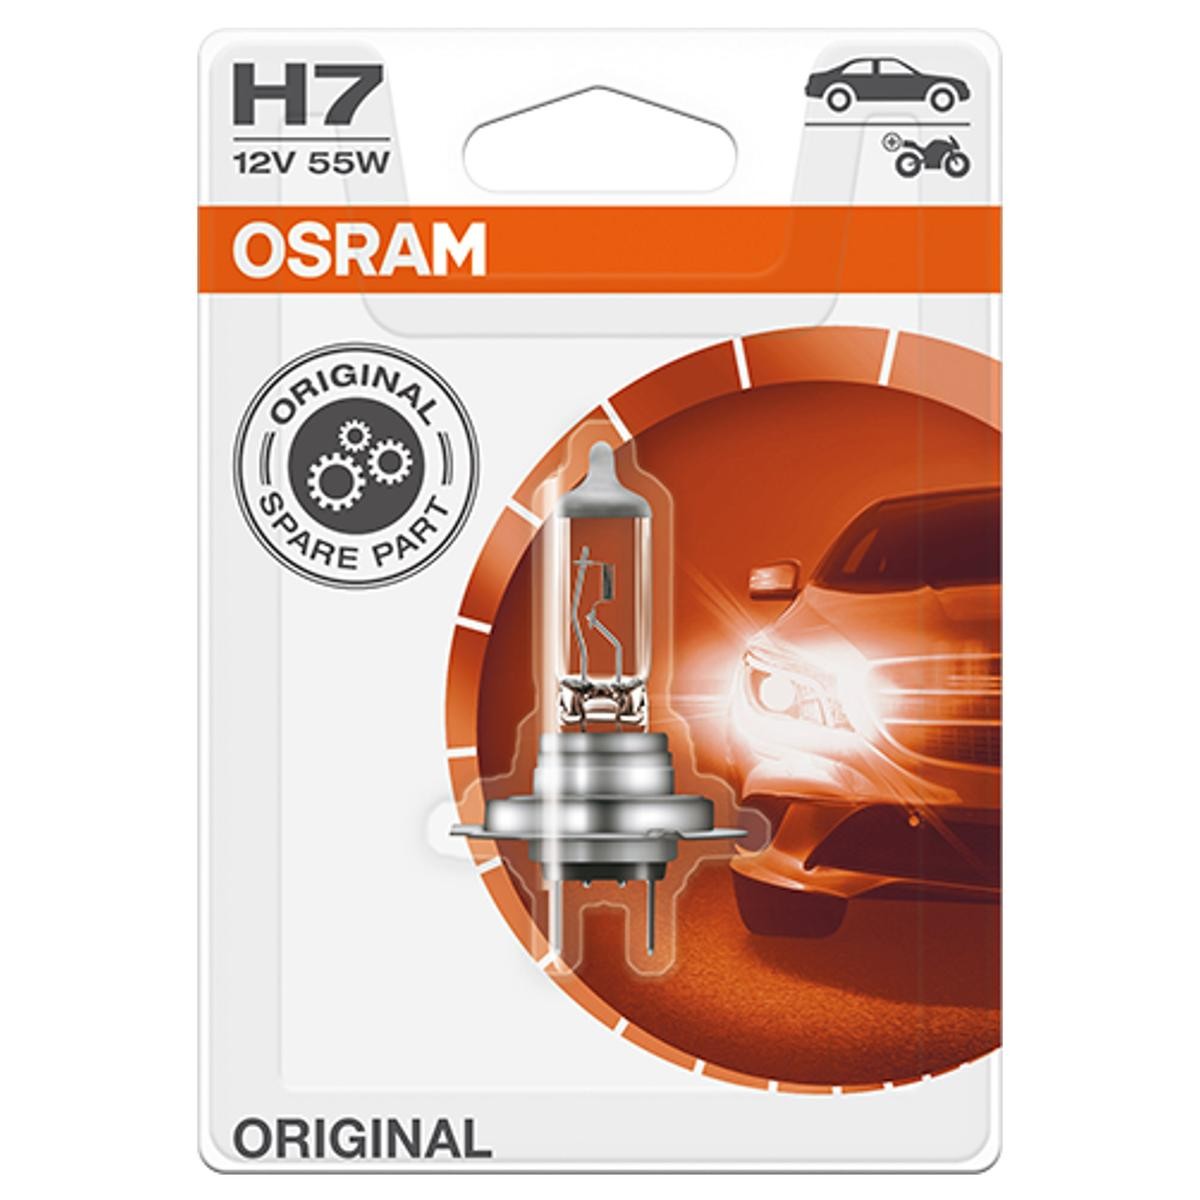 OSRAM 64210-01B Fernlichtlampe H7 12V 55W3200K Halogen Abarth in Original Qualität